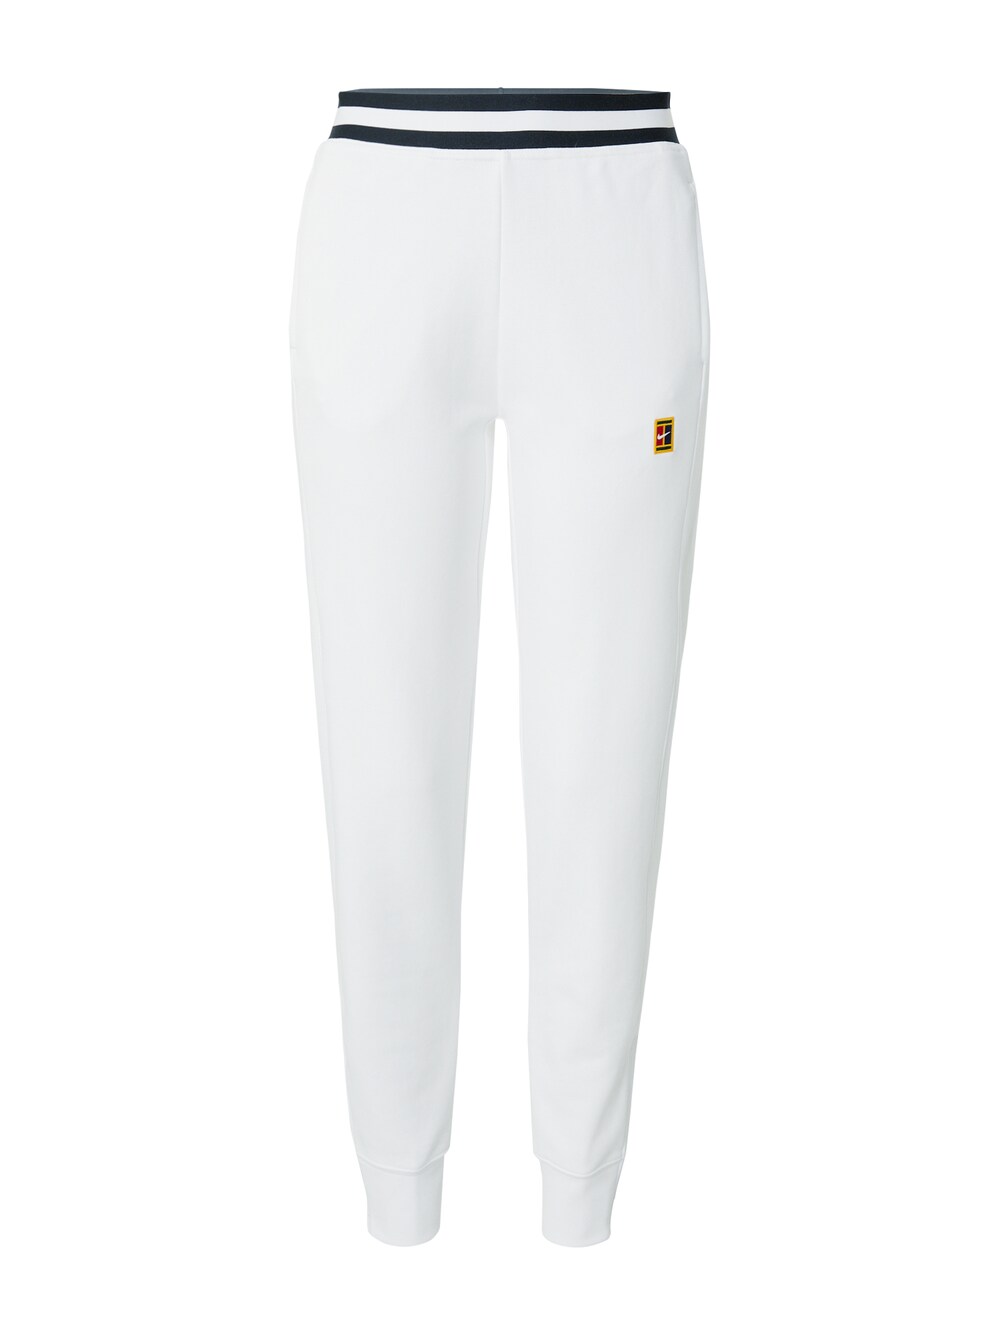 Зауженные тренировочные брюки Nike, белый зауженные тренировочные брюки nike one pro черный